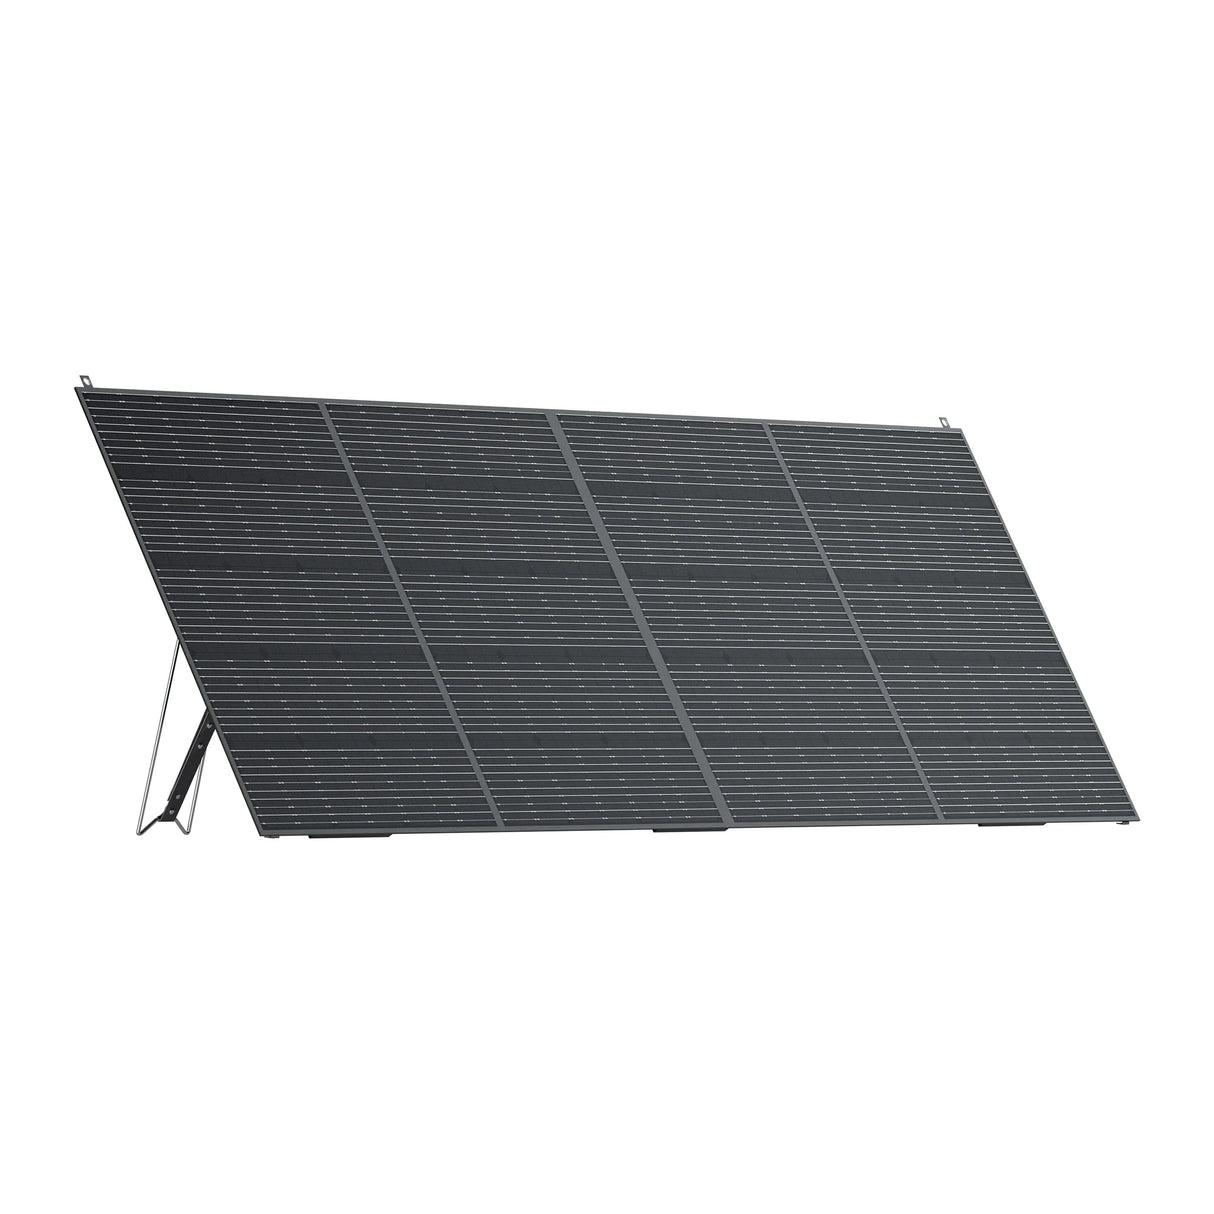 BLUETTI PV420 Solar Panel side view 